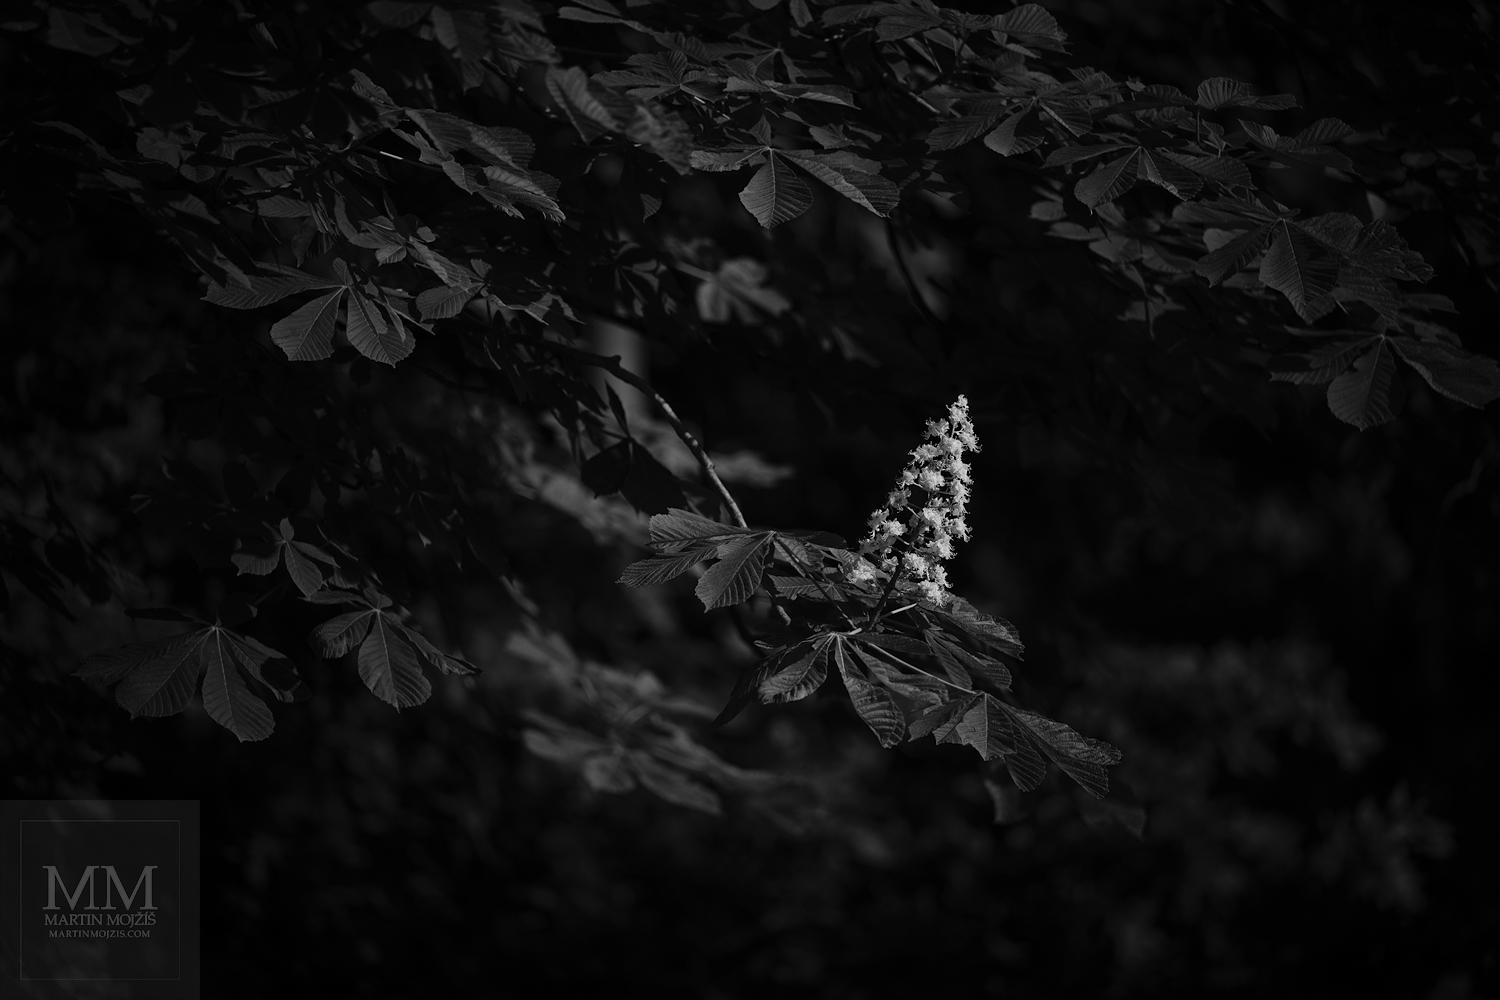 Květ kaštanu mezi listy. Umělecká černobílá velkoformátová fotografie s názvem KVETOU. Fotograf Martin Mojžíš.